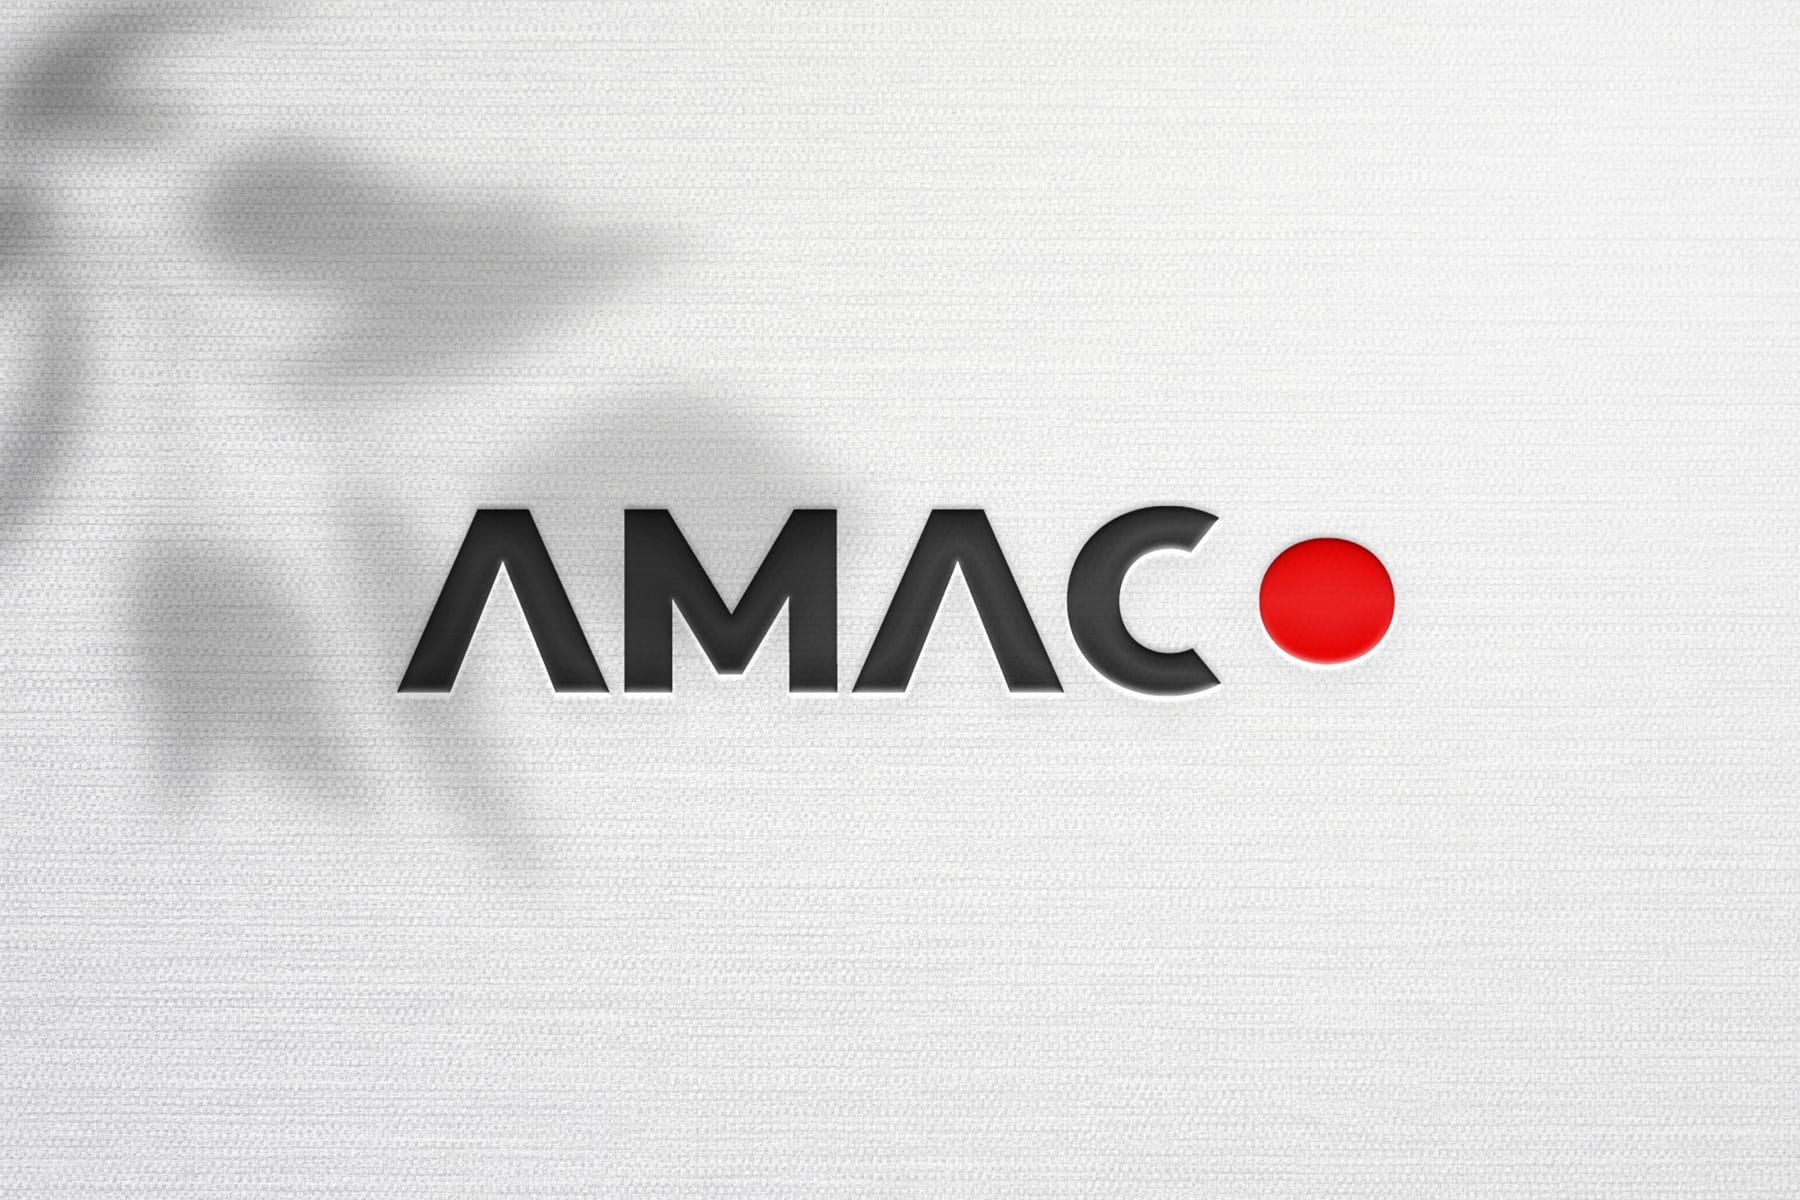 Logo Amaco